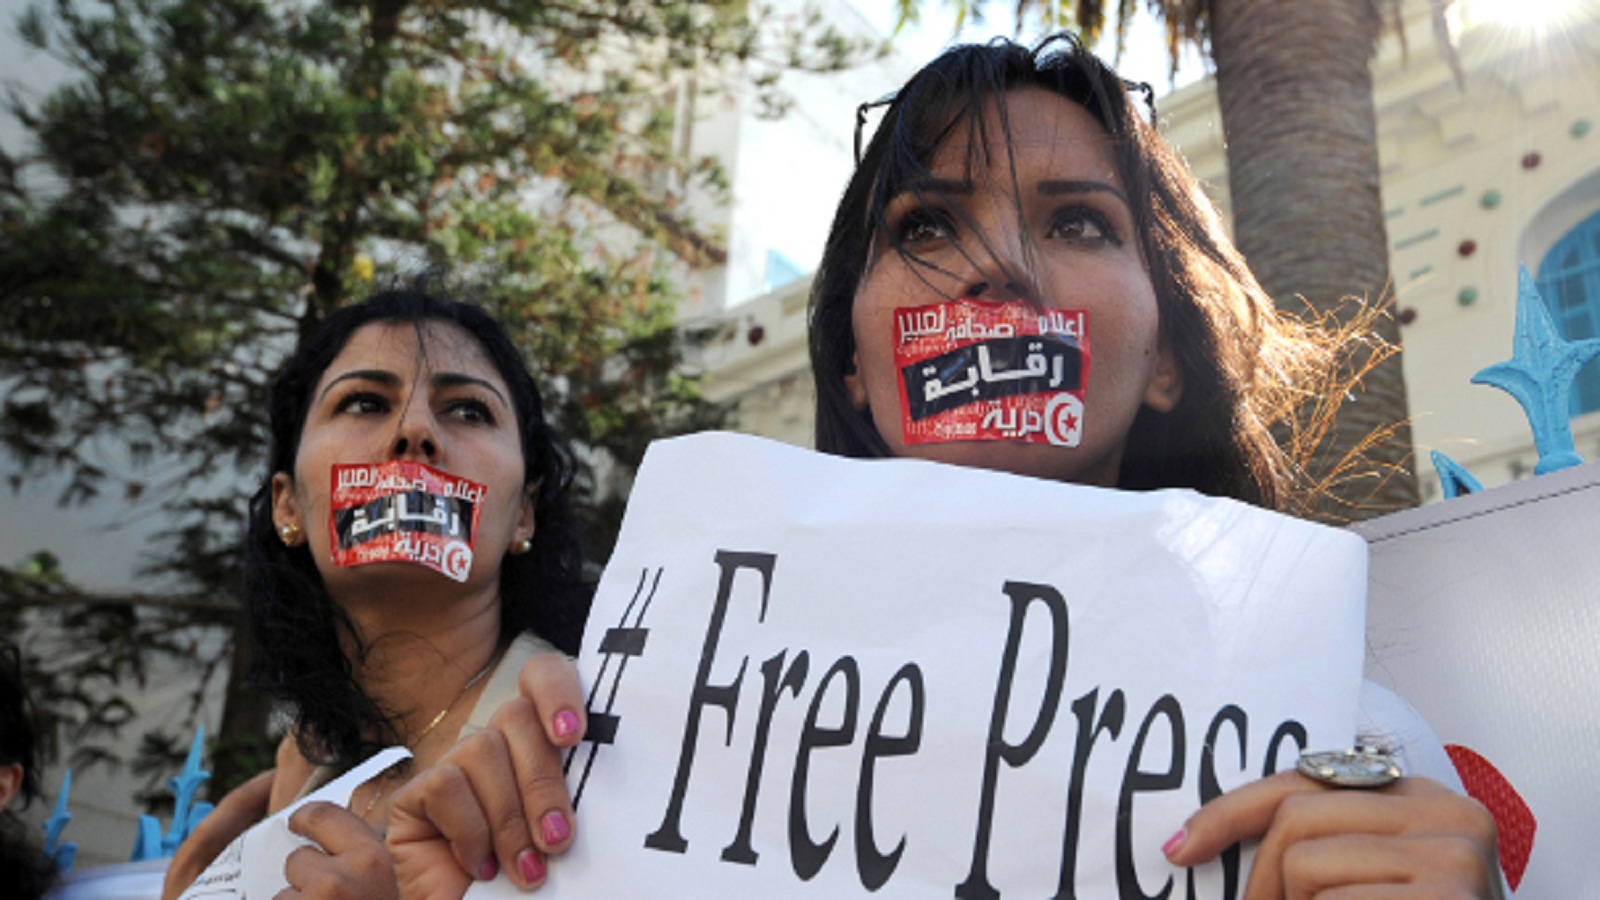 مؤشر حرية الصحافة: تقدّم ملحوظ لتونس